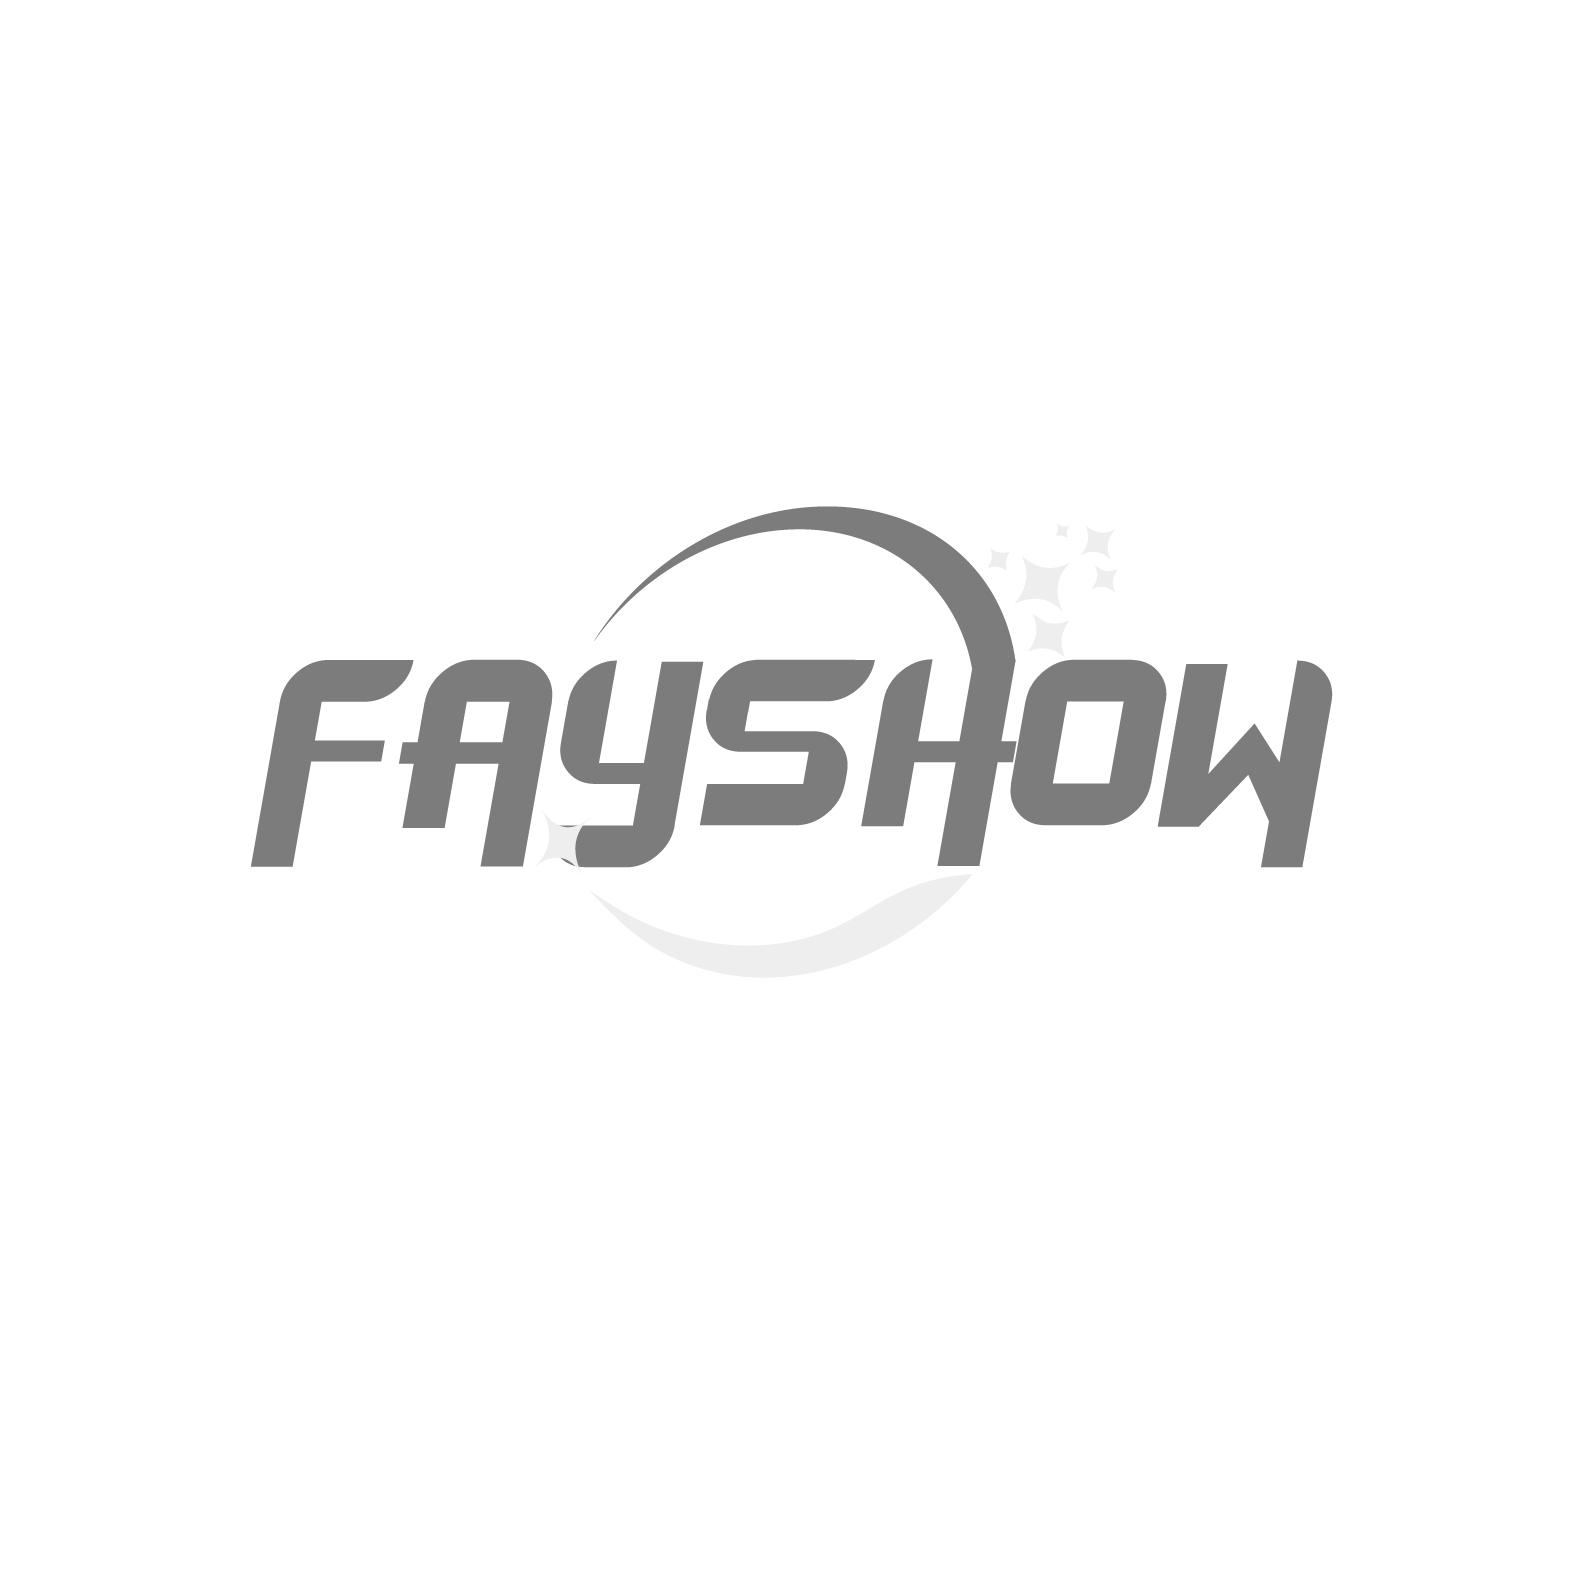 FAYSHOW商标转让